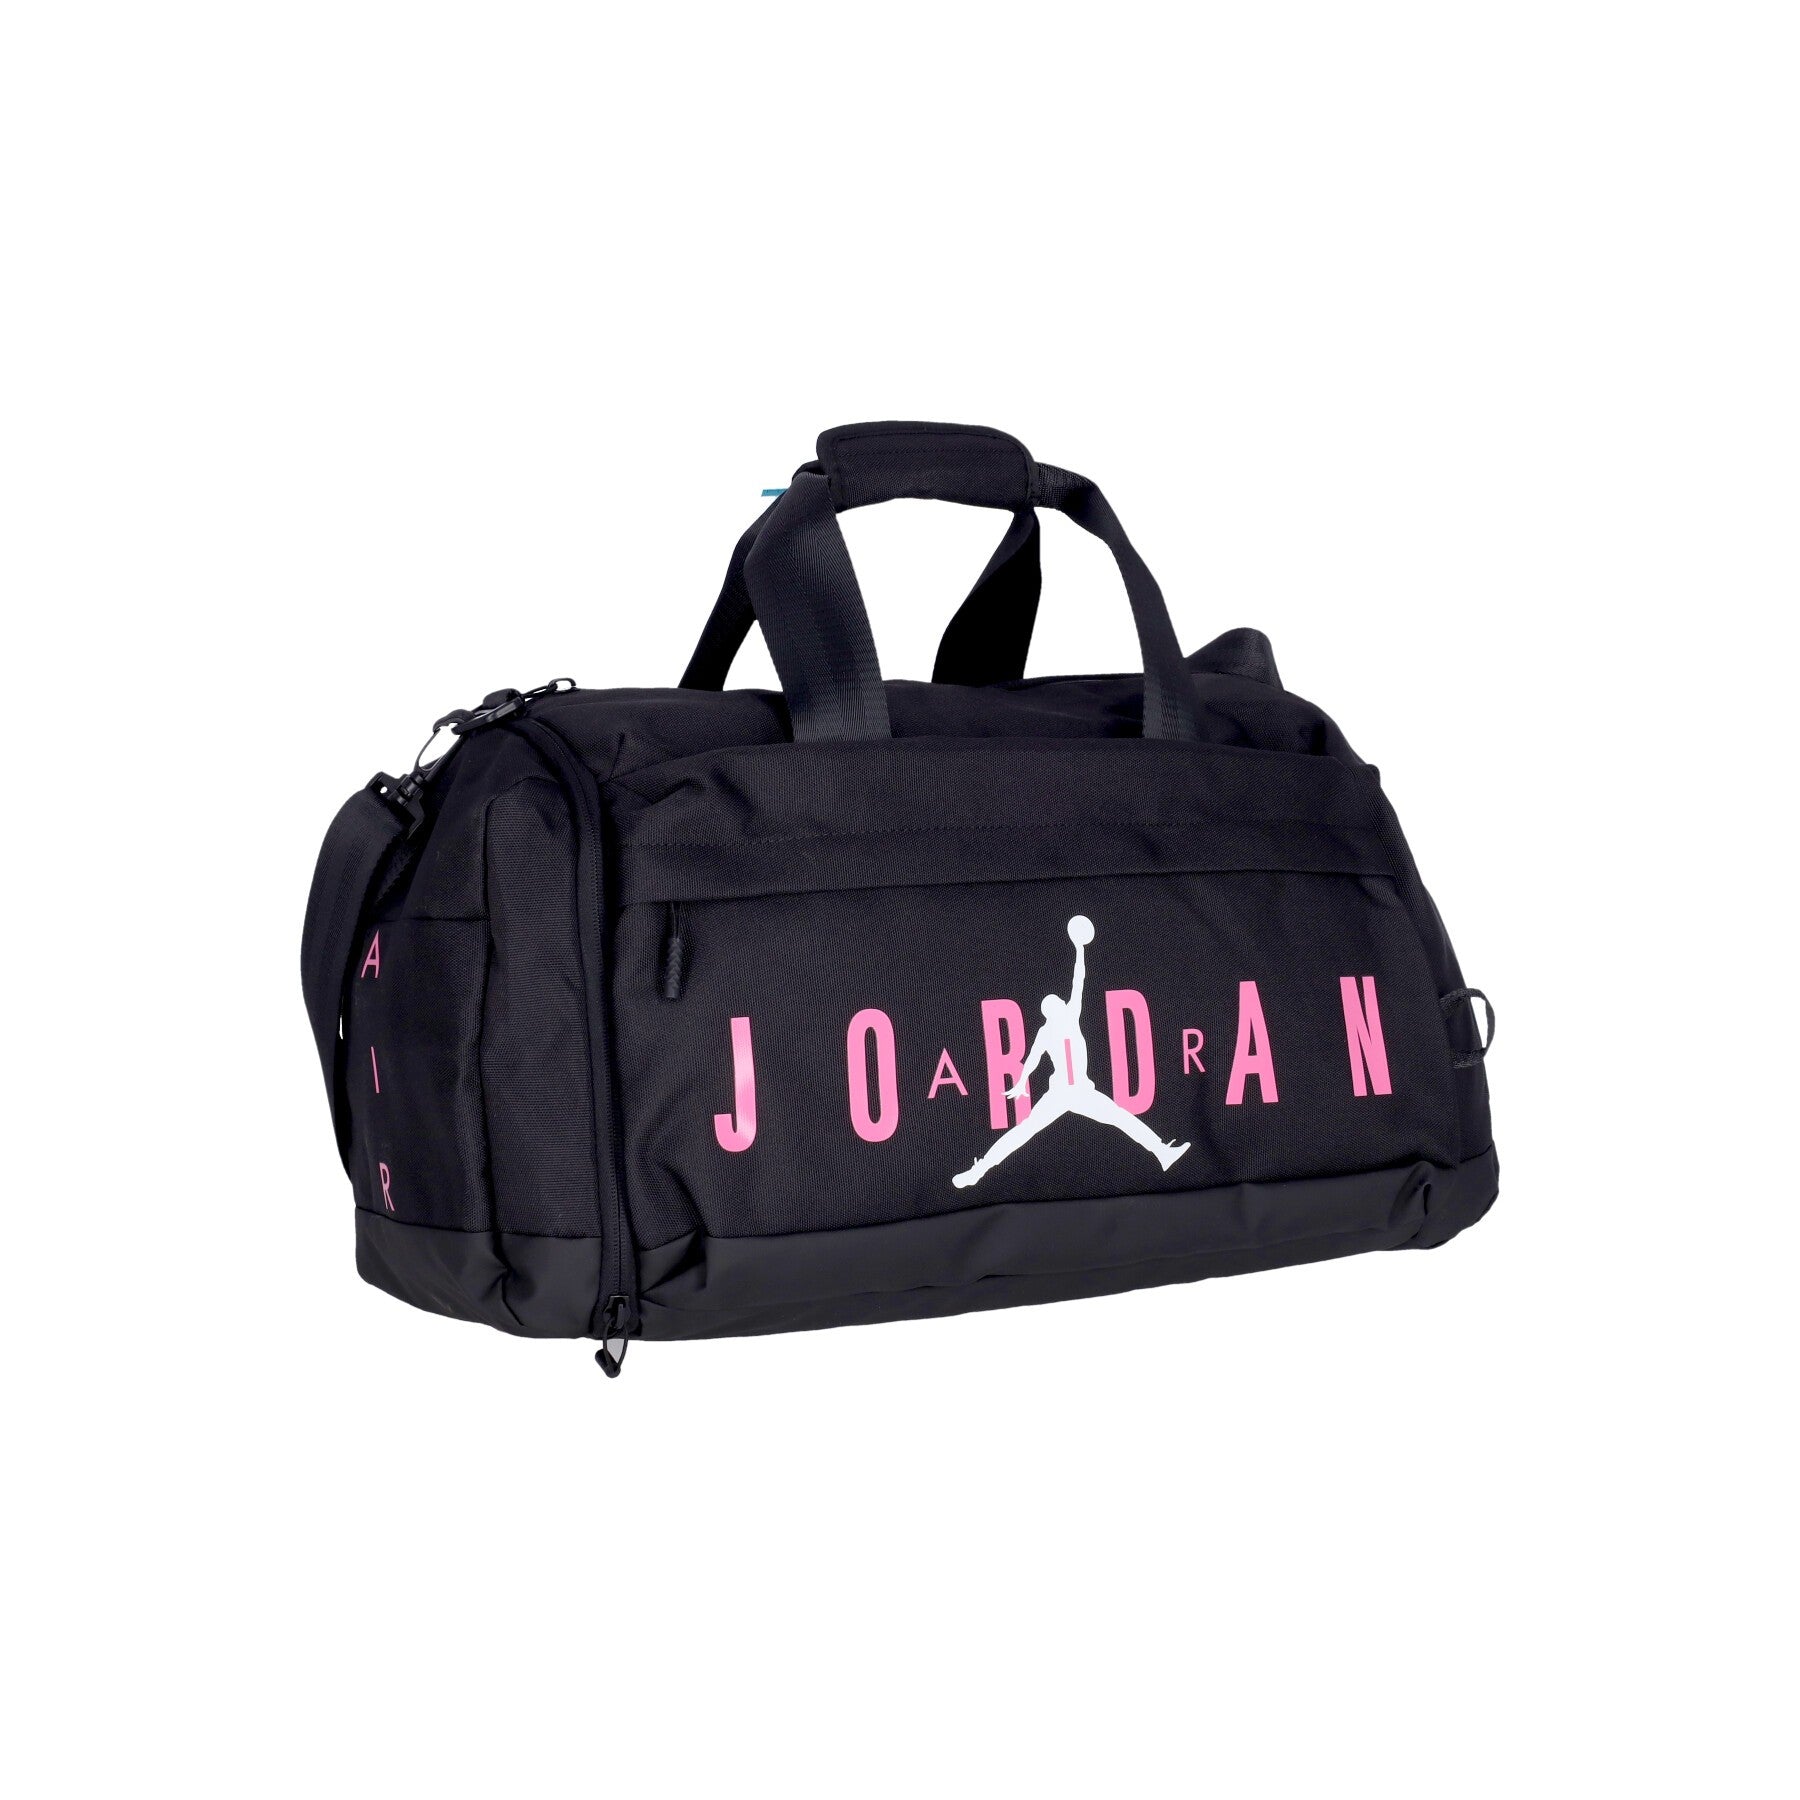 Air Jordan Duffle Bag Zylindrische Duffle Bag für Herren Schwarz/Pinksicle